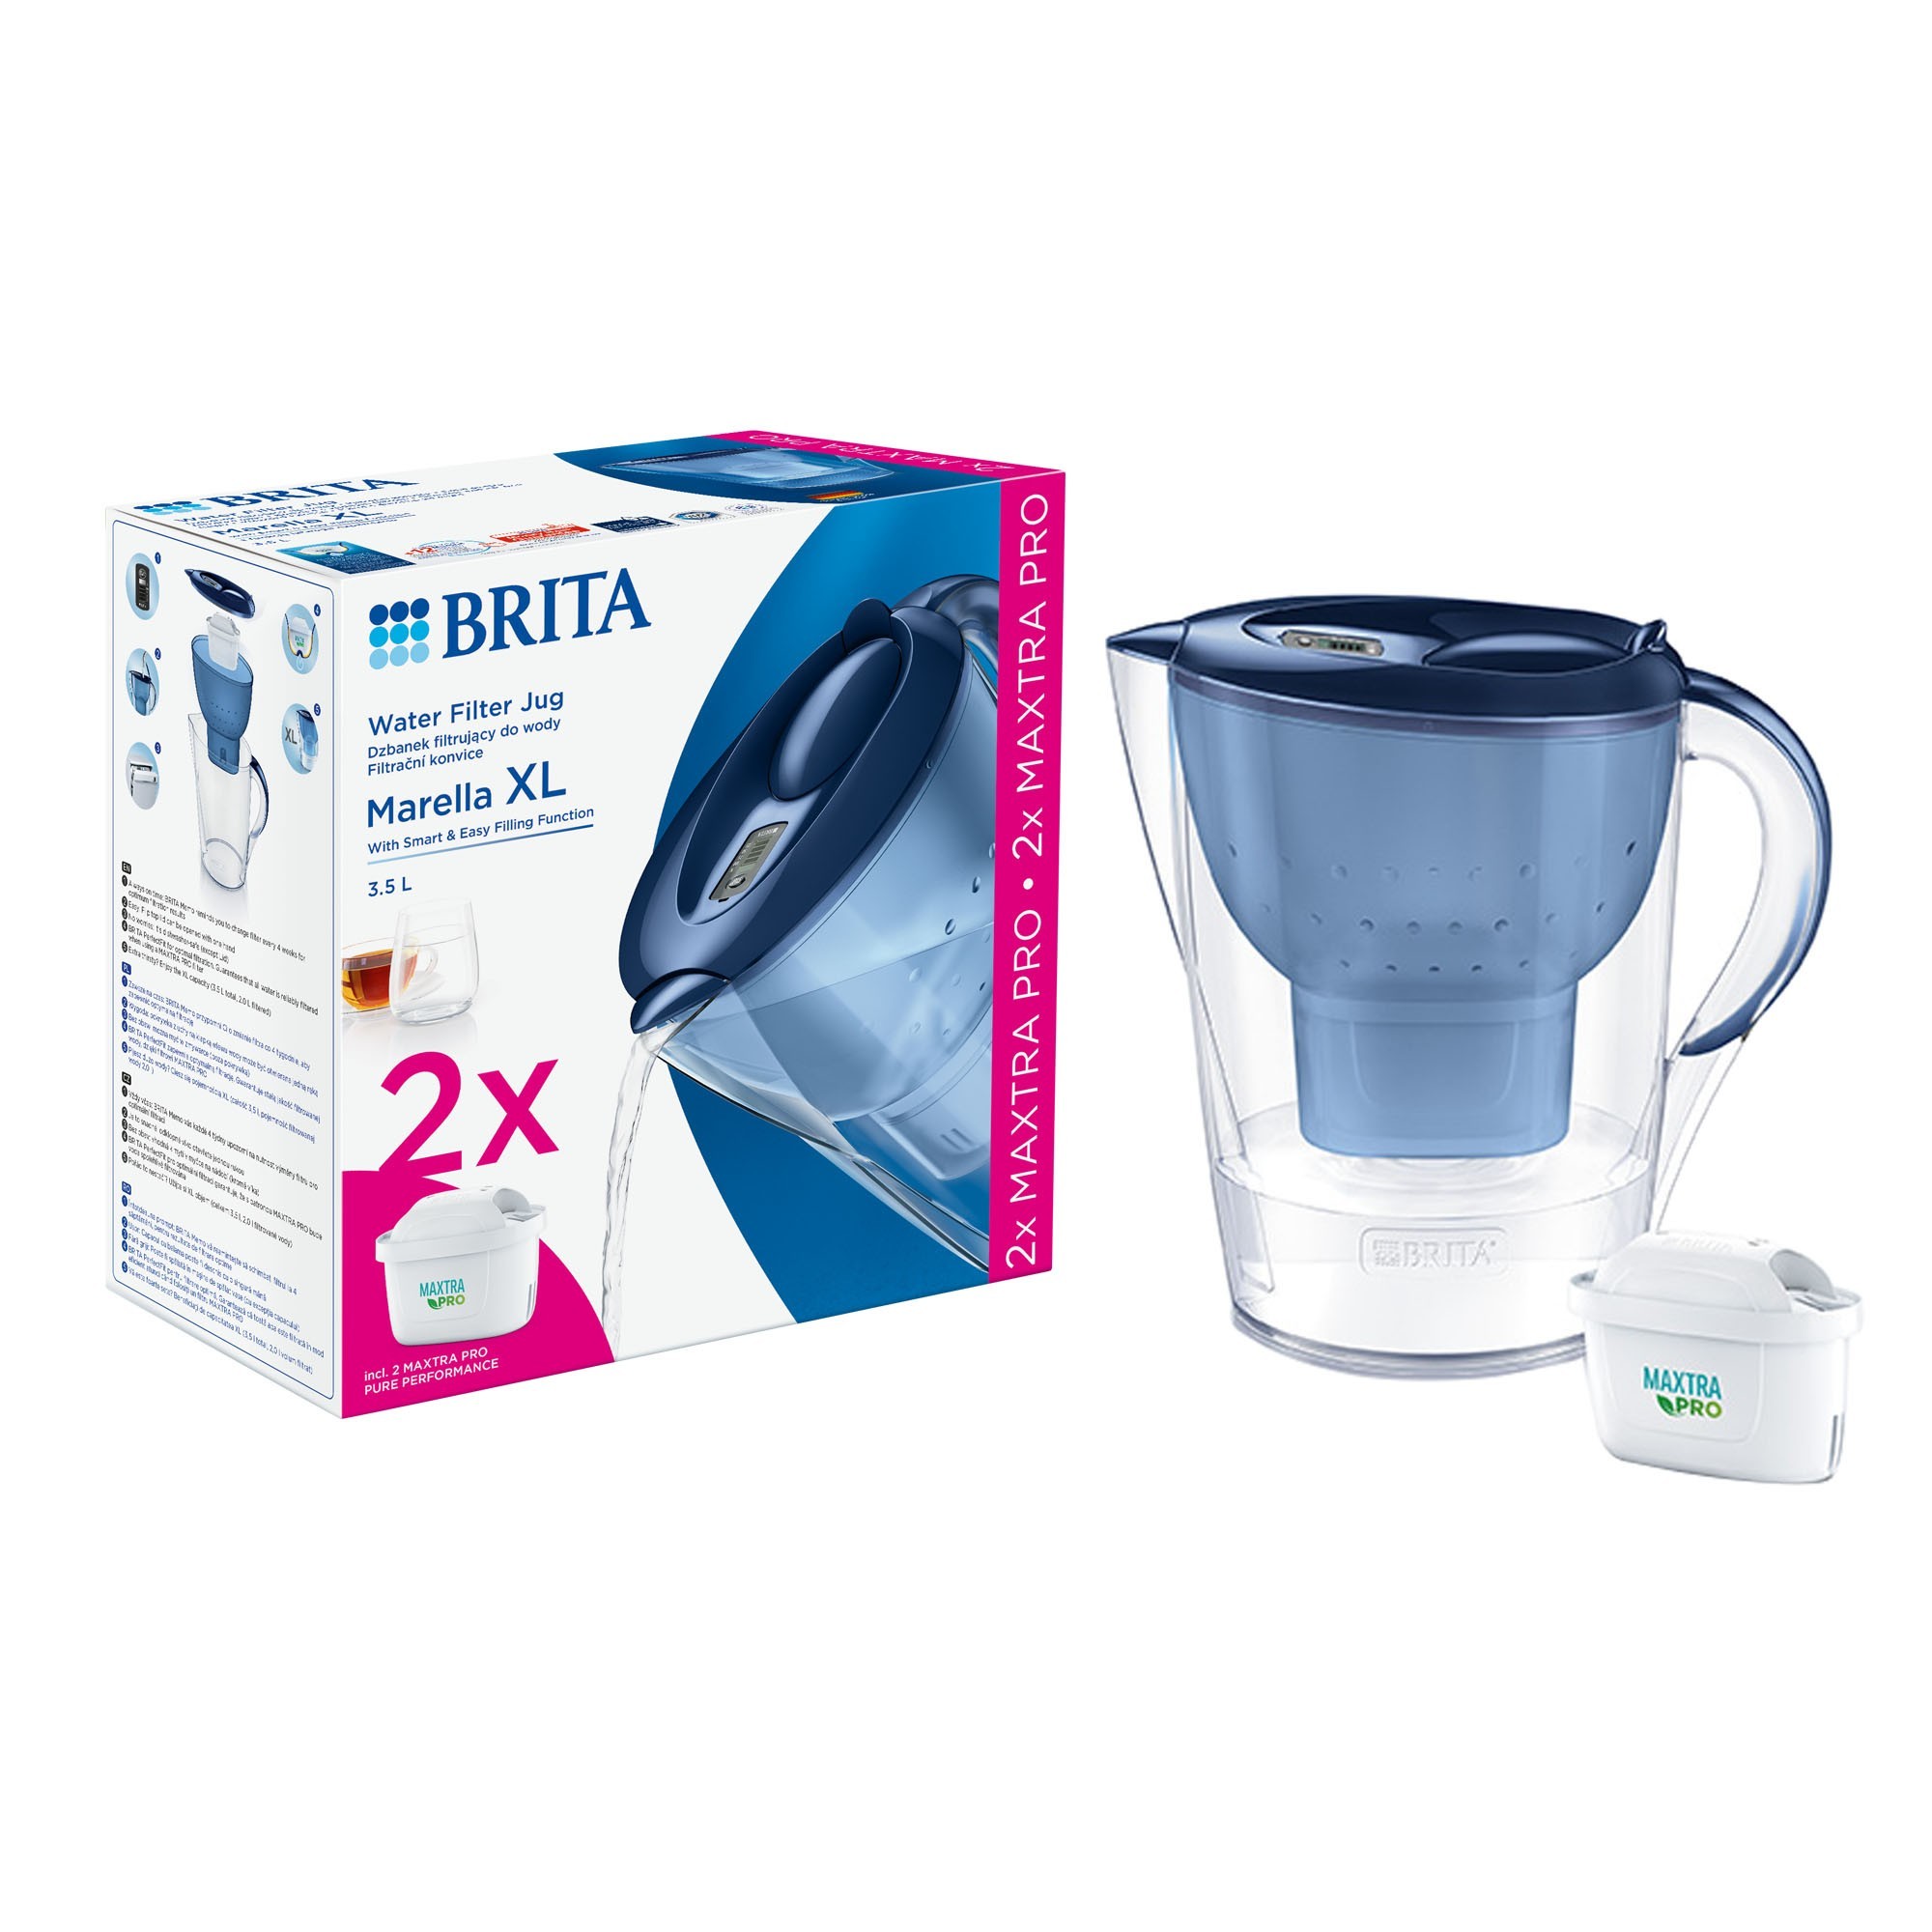 BRITA Marella XL 3.5 L starter-pack + 2 Maxtra PRO filters (blue